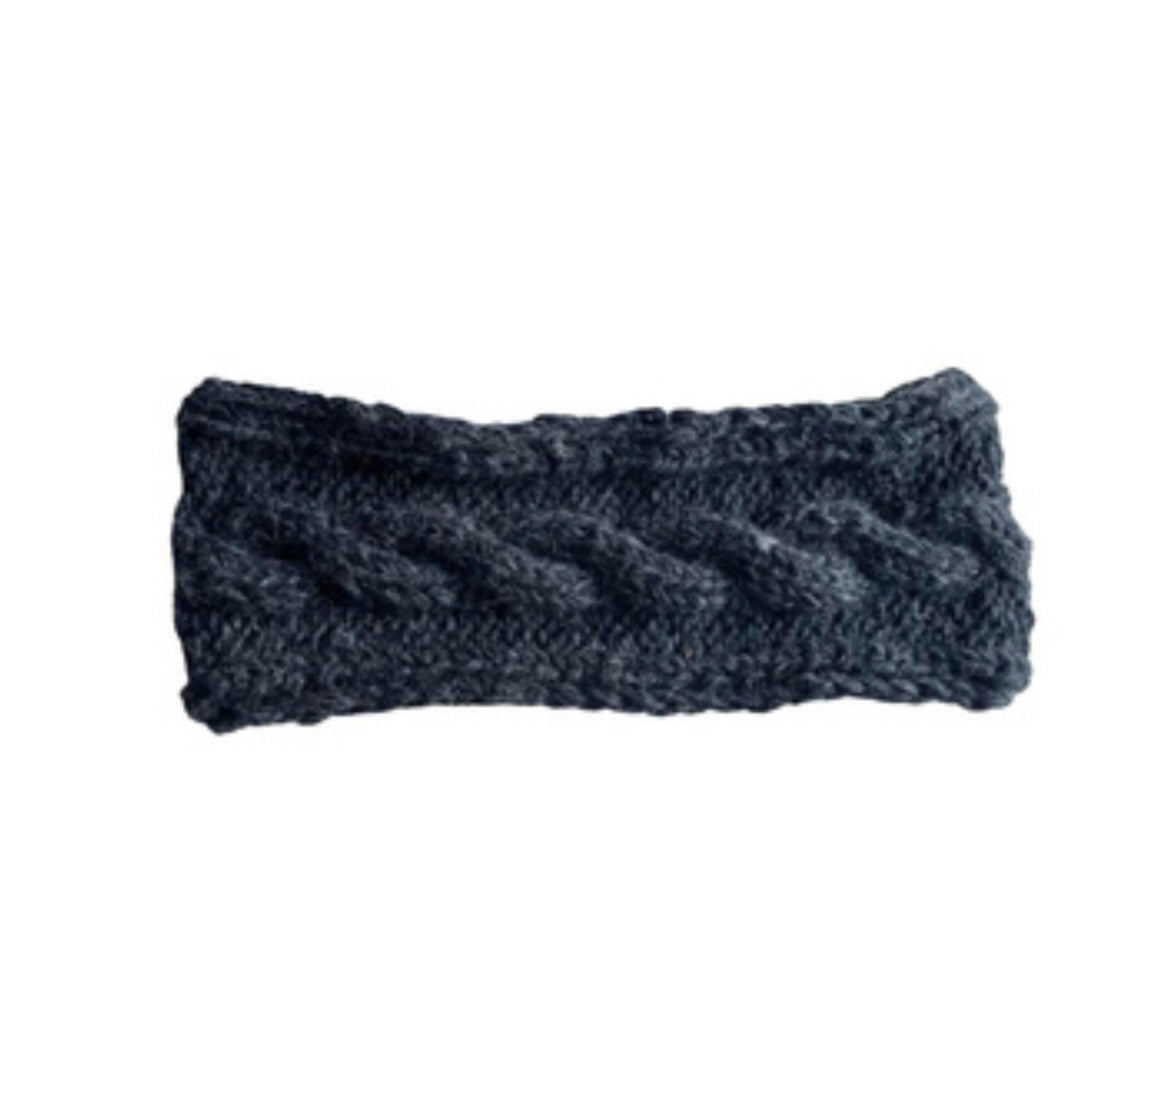 Cable Knit Headband